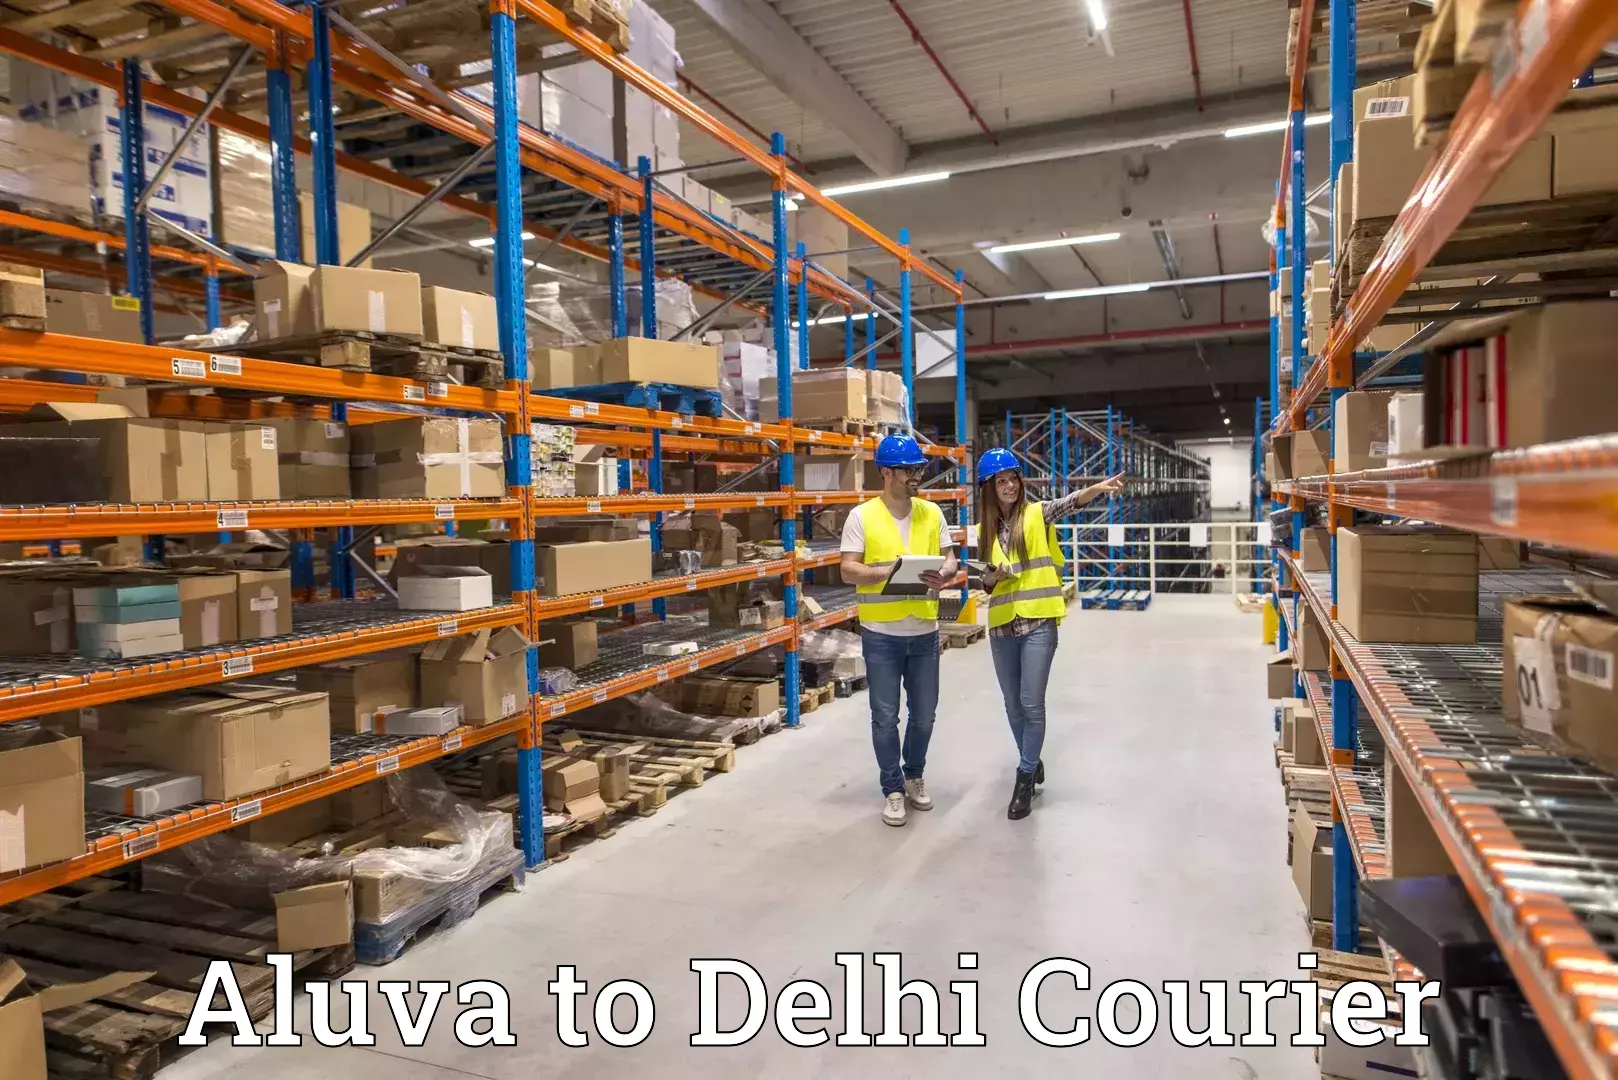 Overnight delivery services Aluva to Jamia Millia Islamia New Delhi